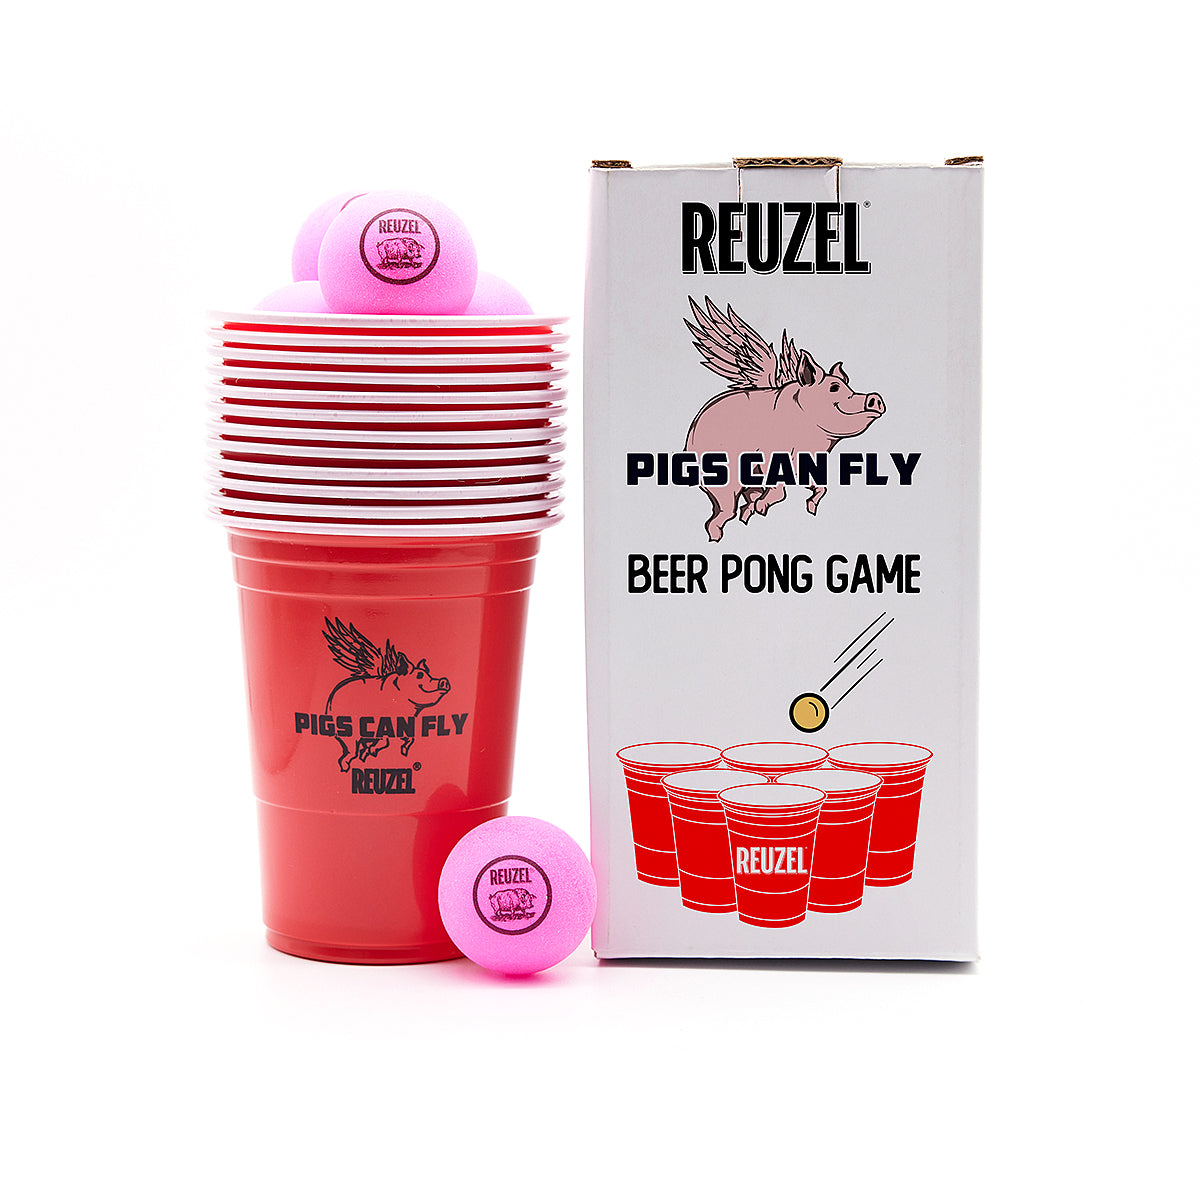 Beer Pong Game - Reuzel